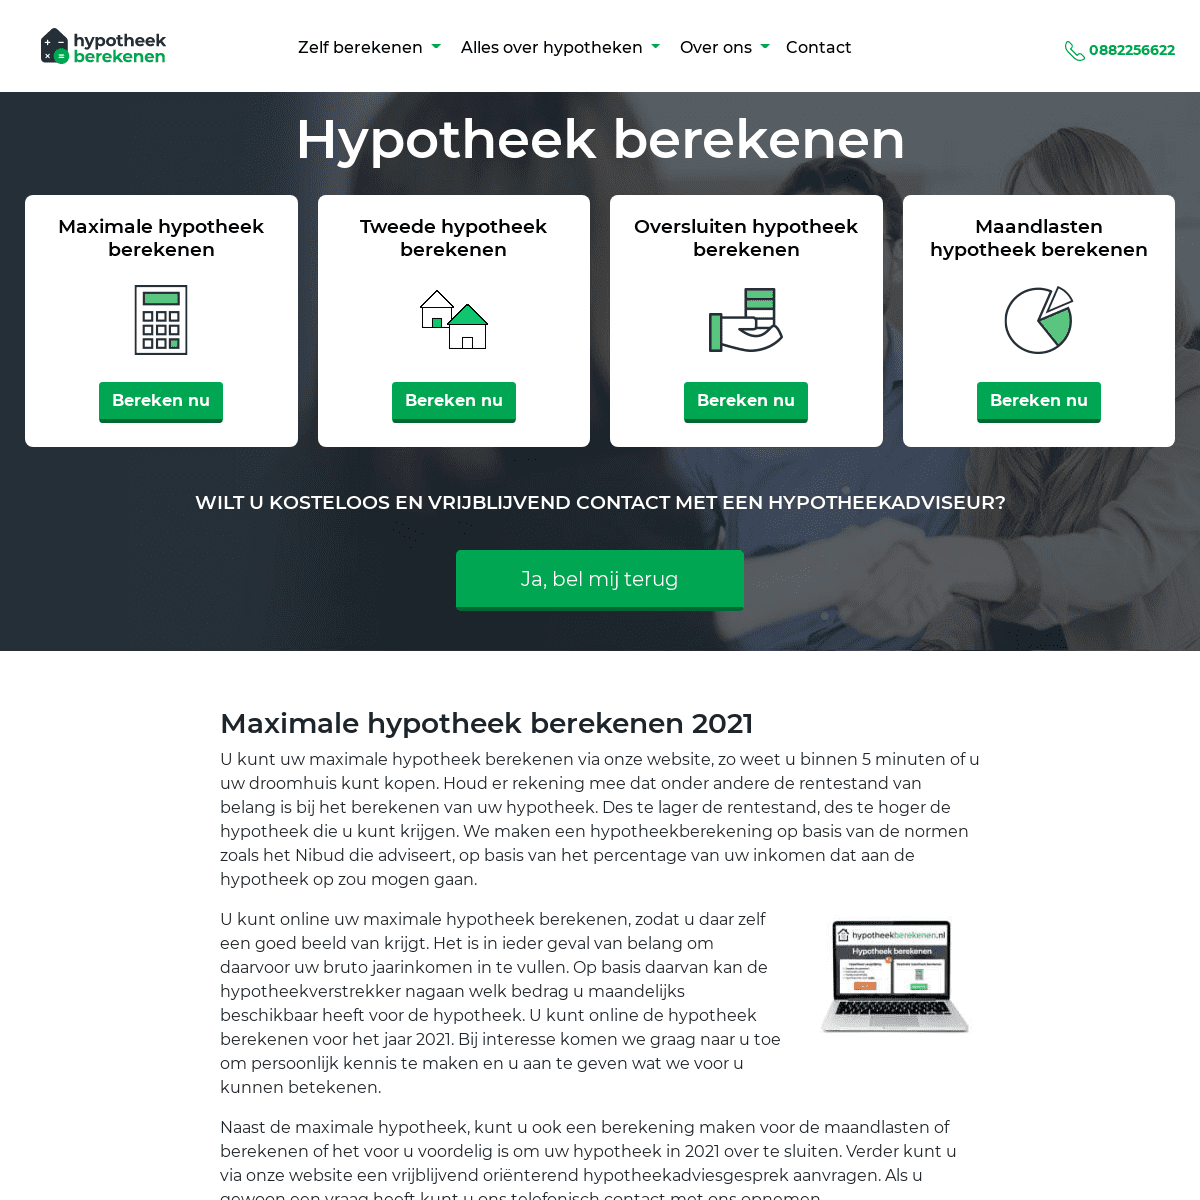 A complete backup of https://hypotheekberekenen.nl